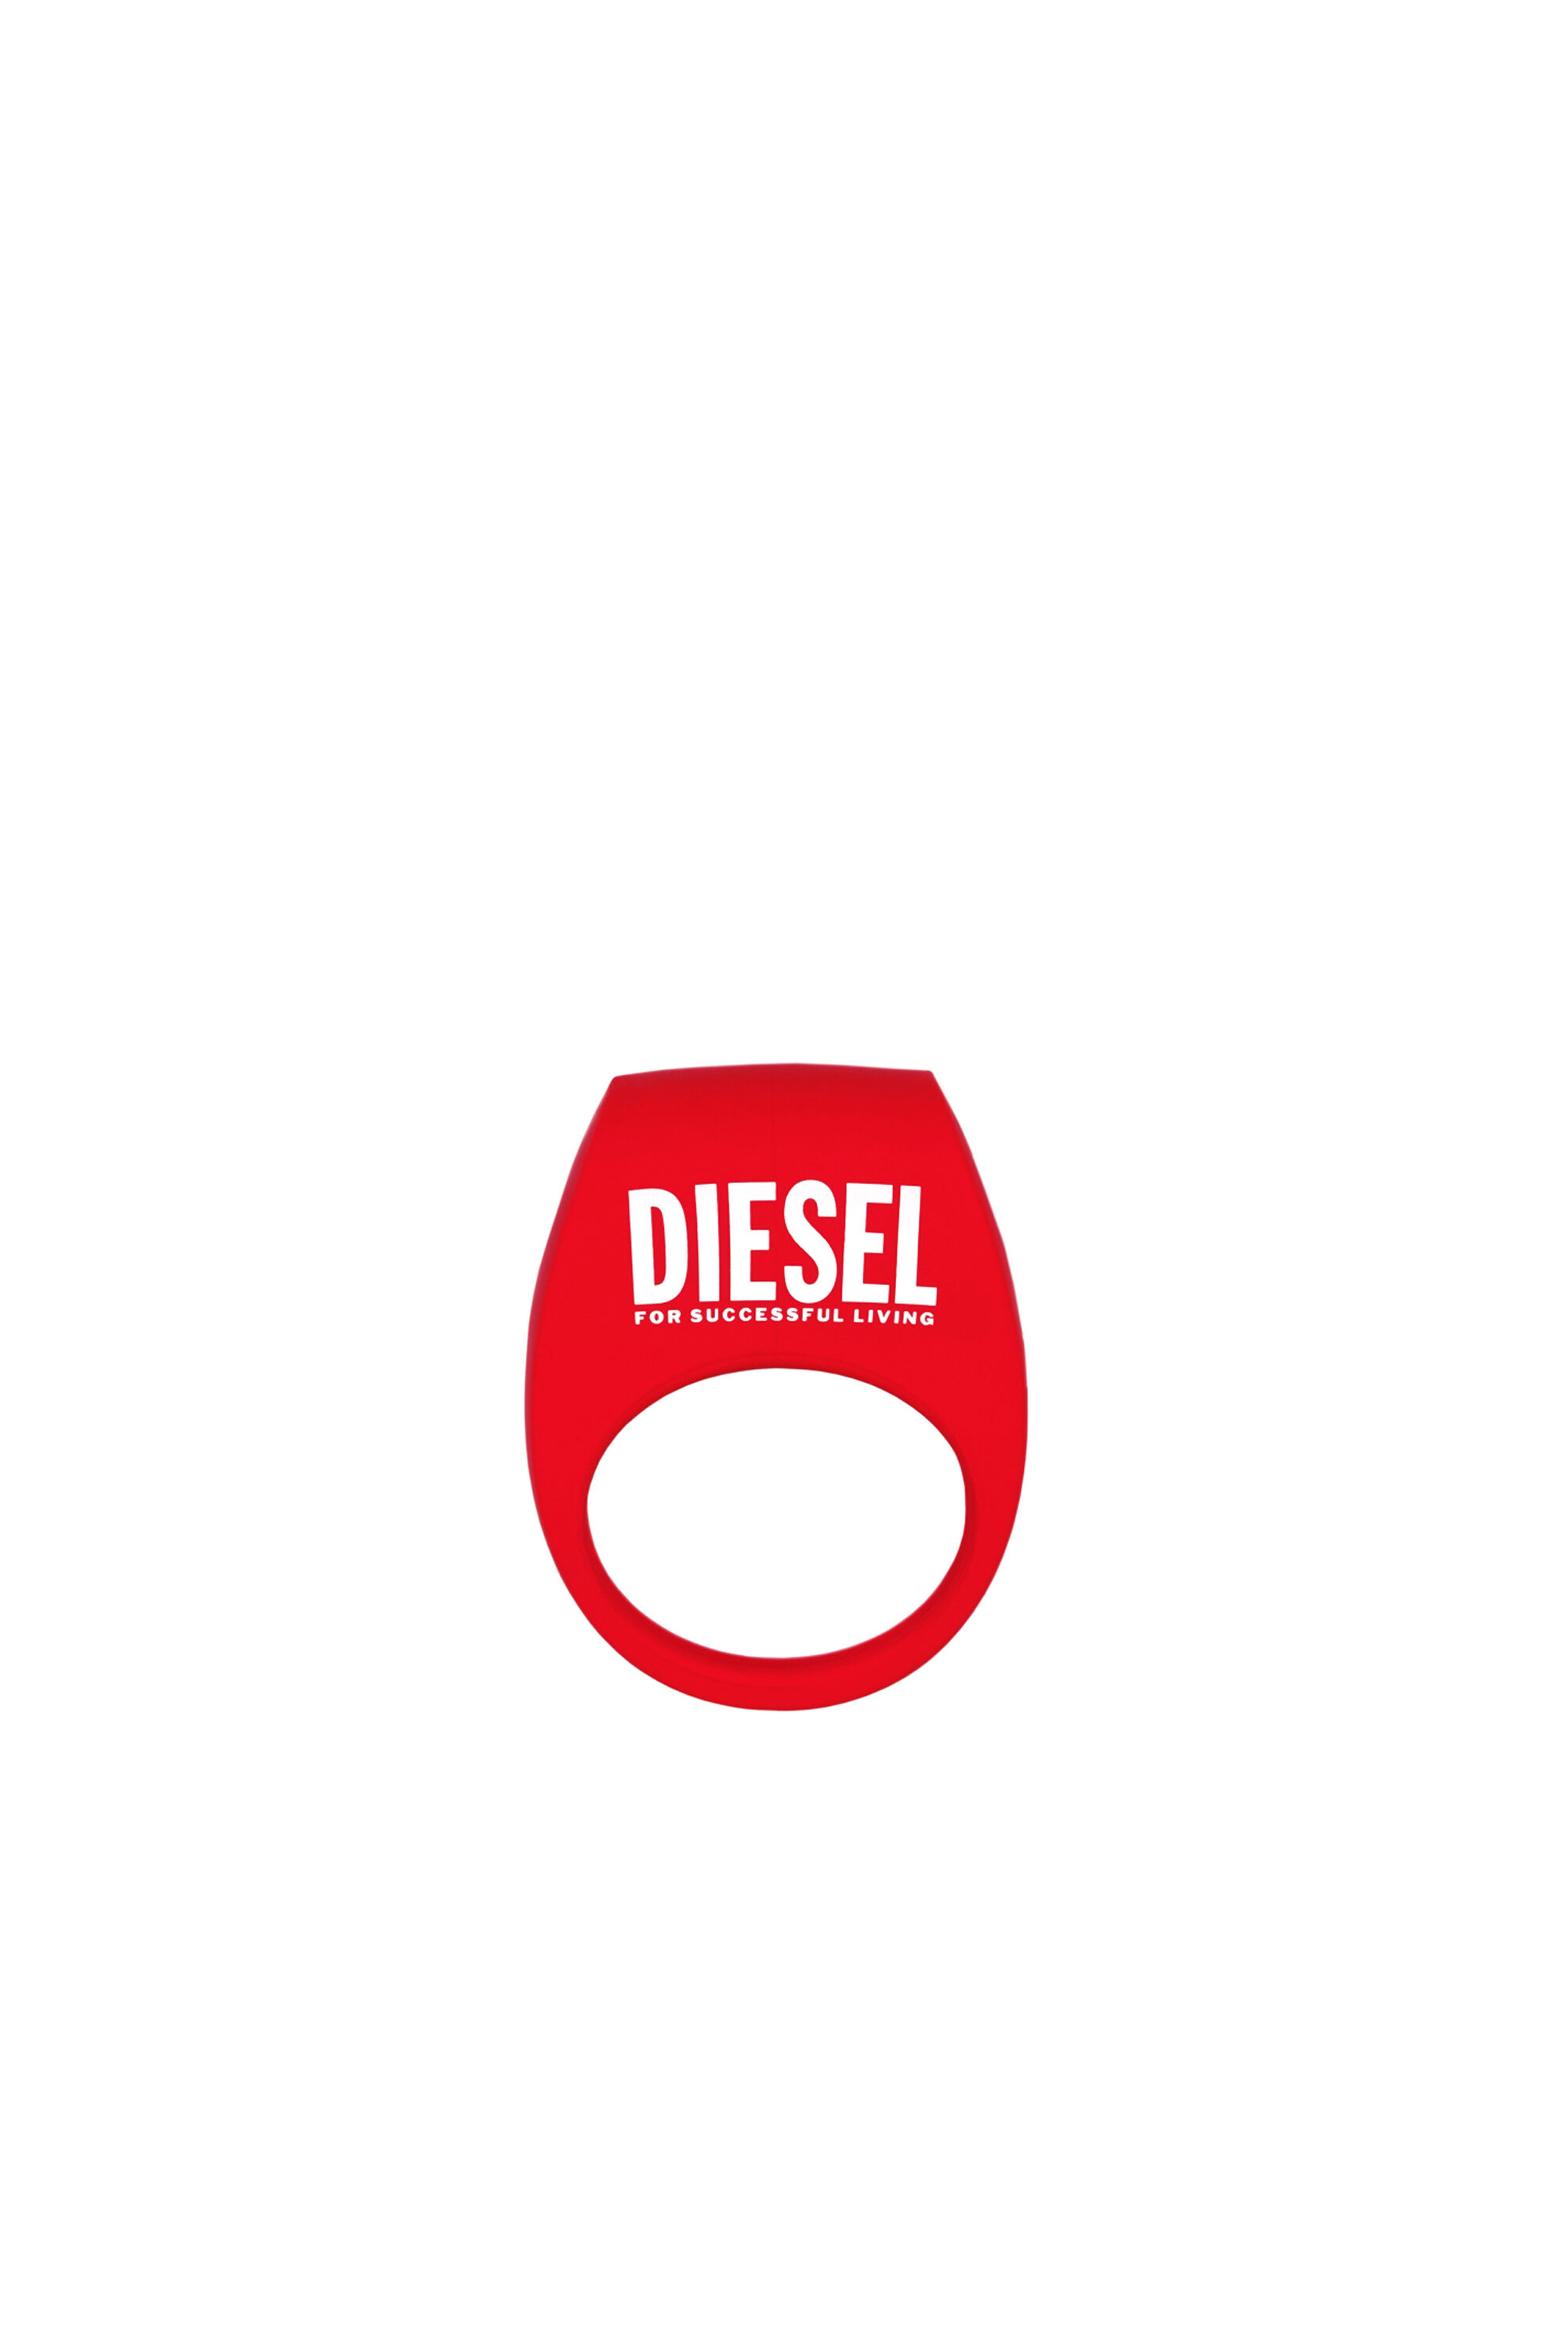 Diesel - 8694 TOR 2 X DIESEL, Rosso - Image 2